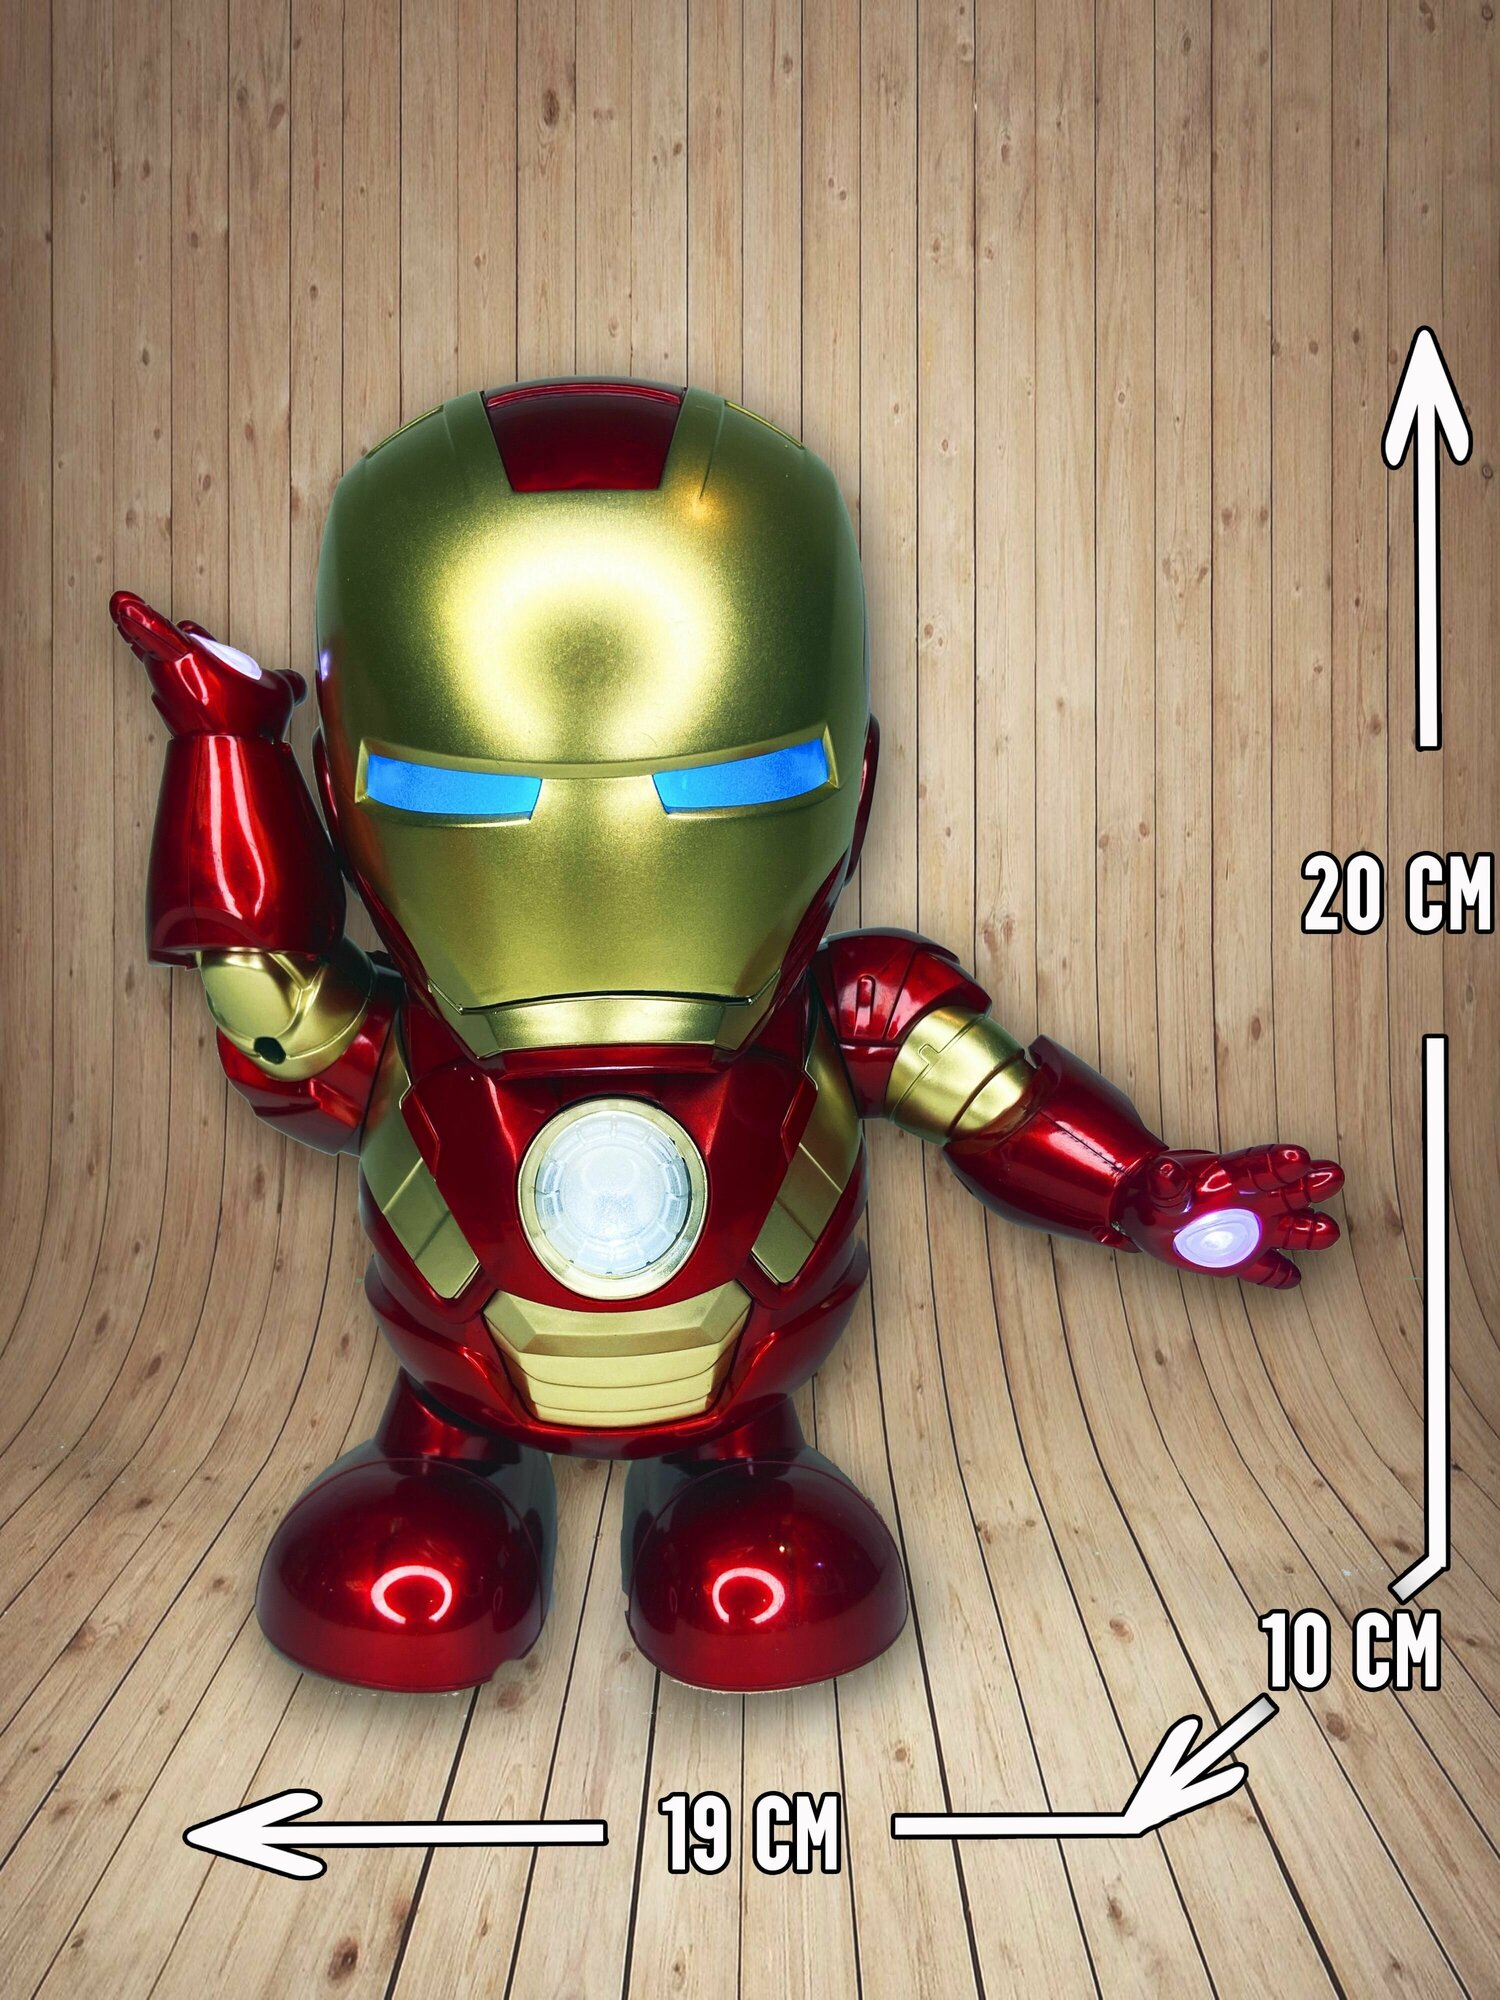 Танцующий робот "Dance Hero" Железный человек - игрушка со звуковыми и световыми эффектами